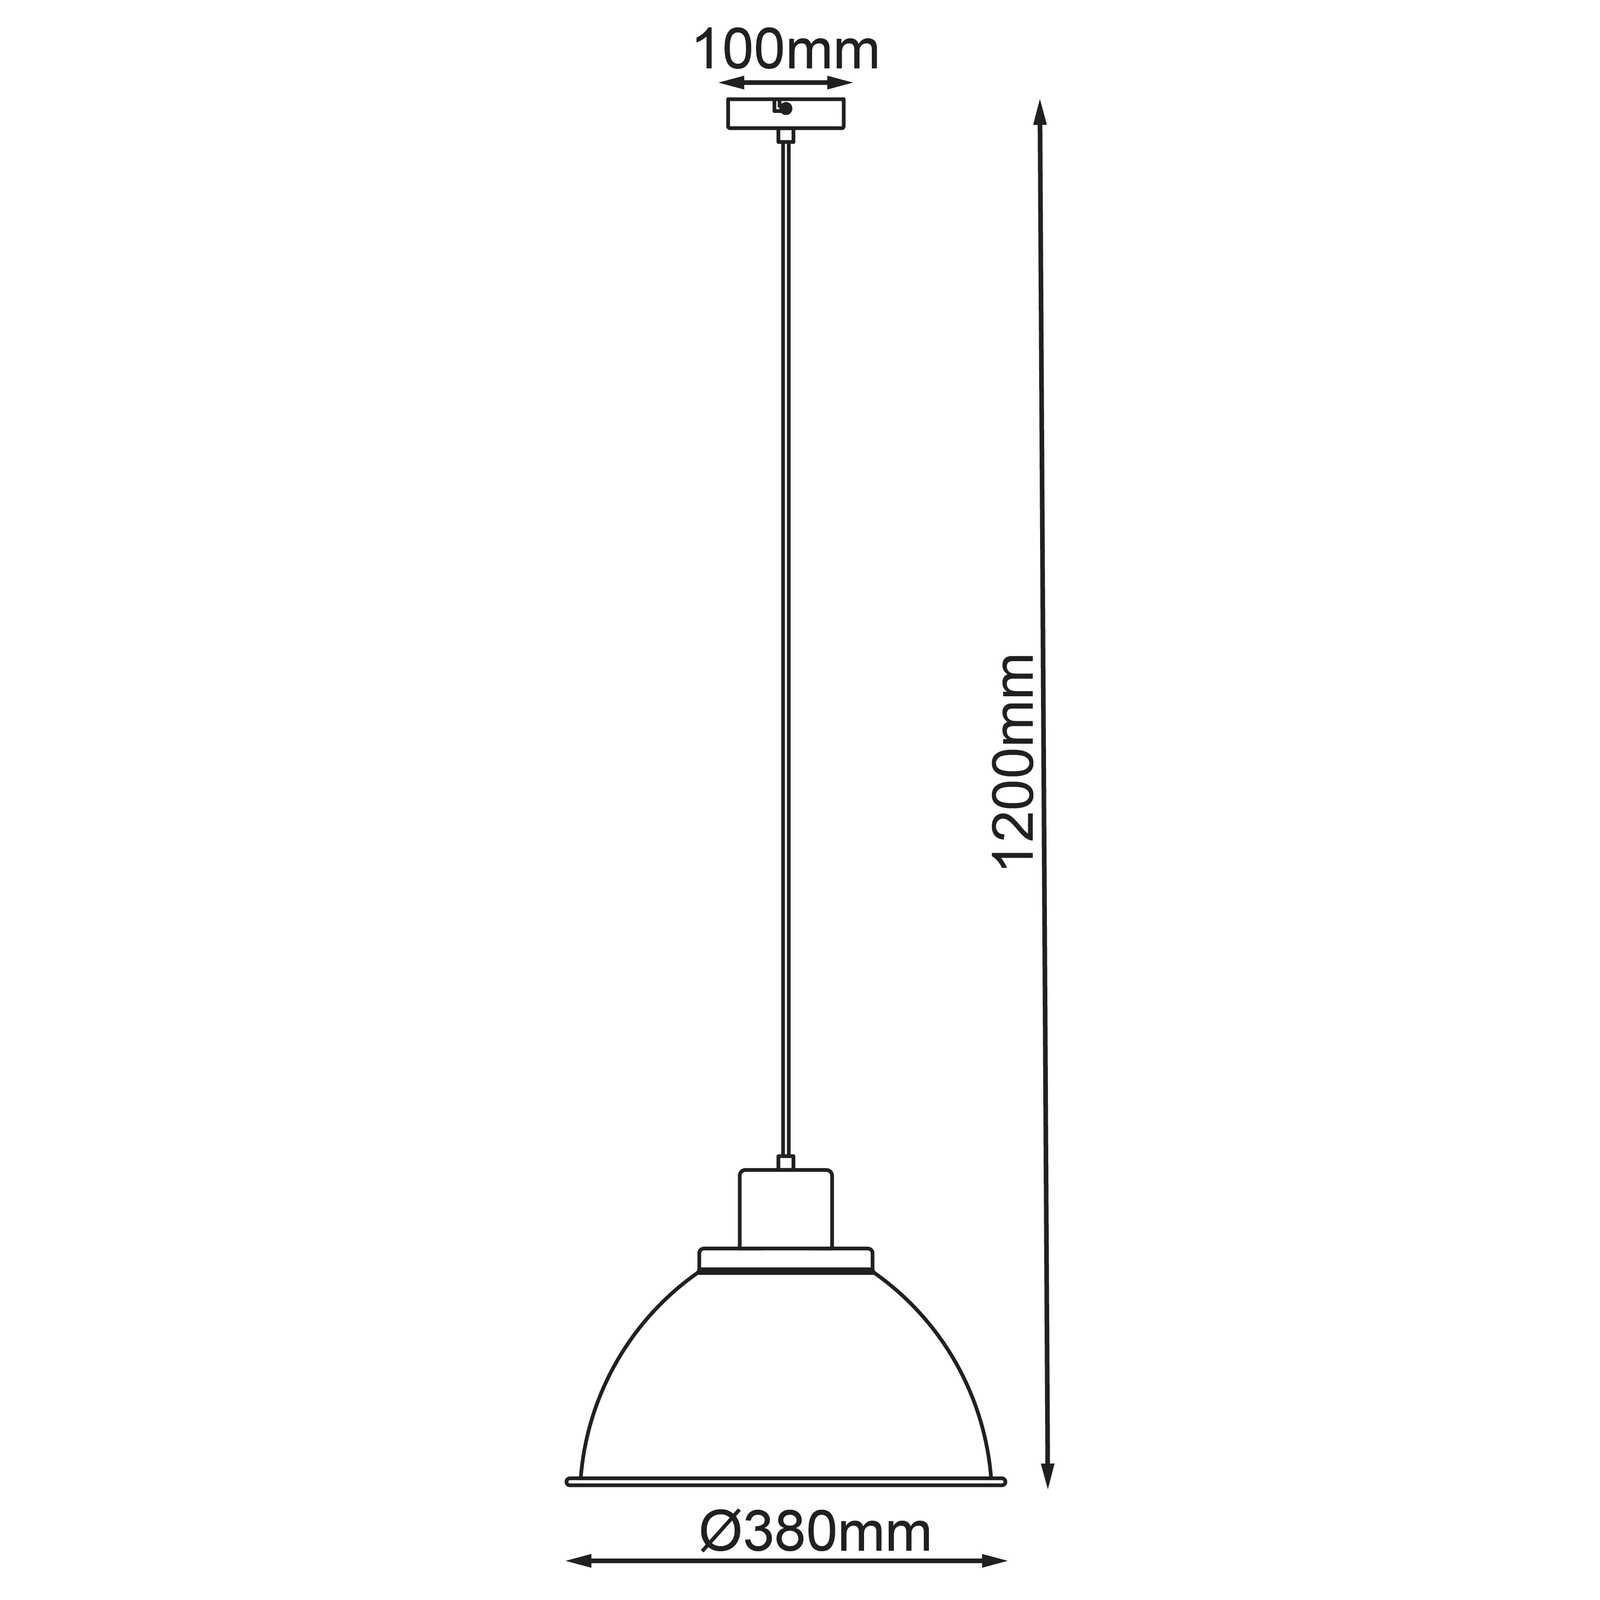             Houten hanglamp - Franziska 12 - Groen
        